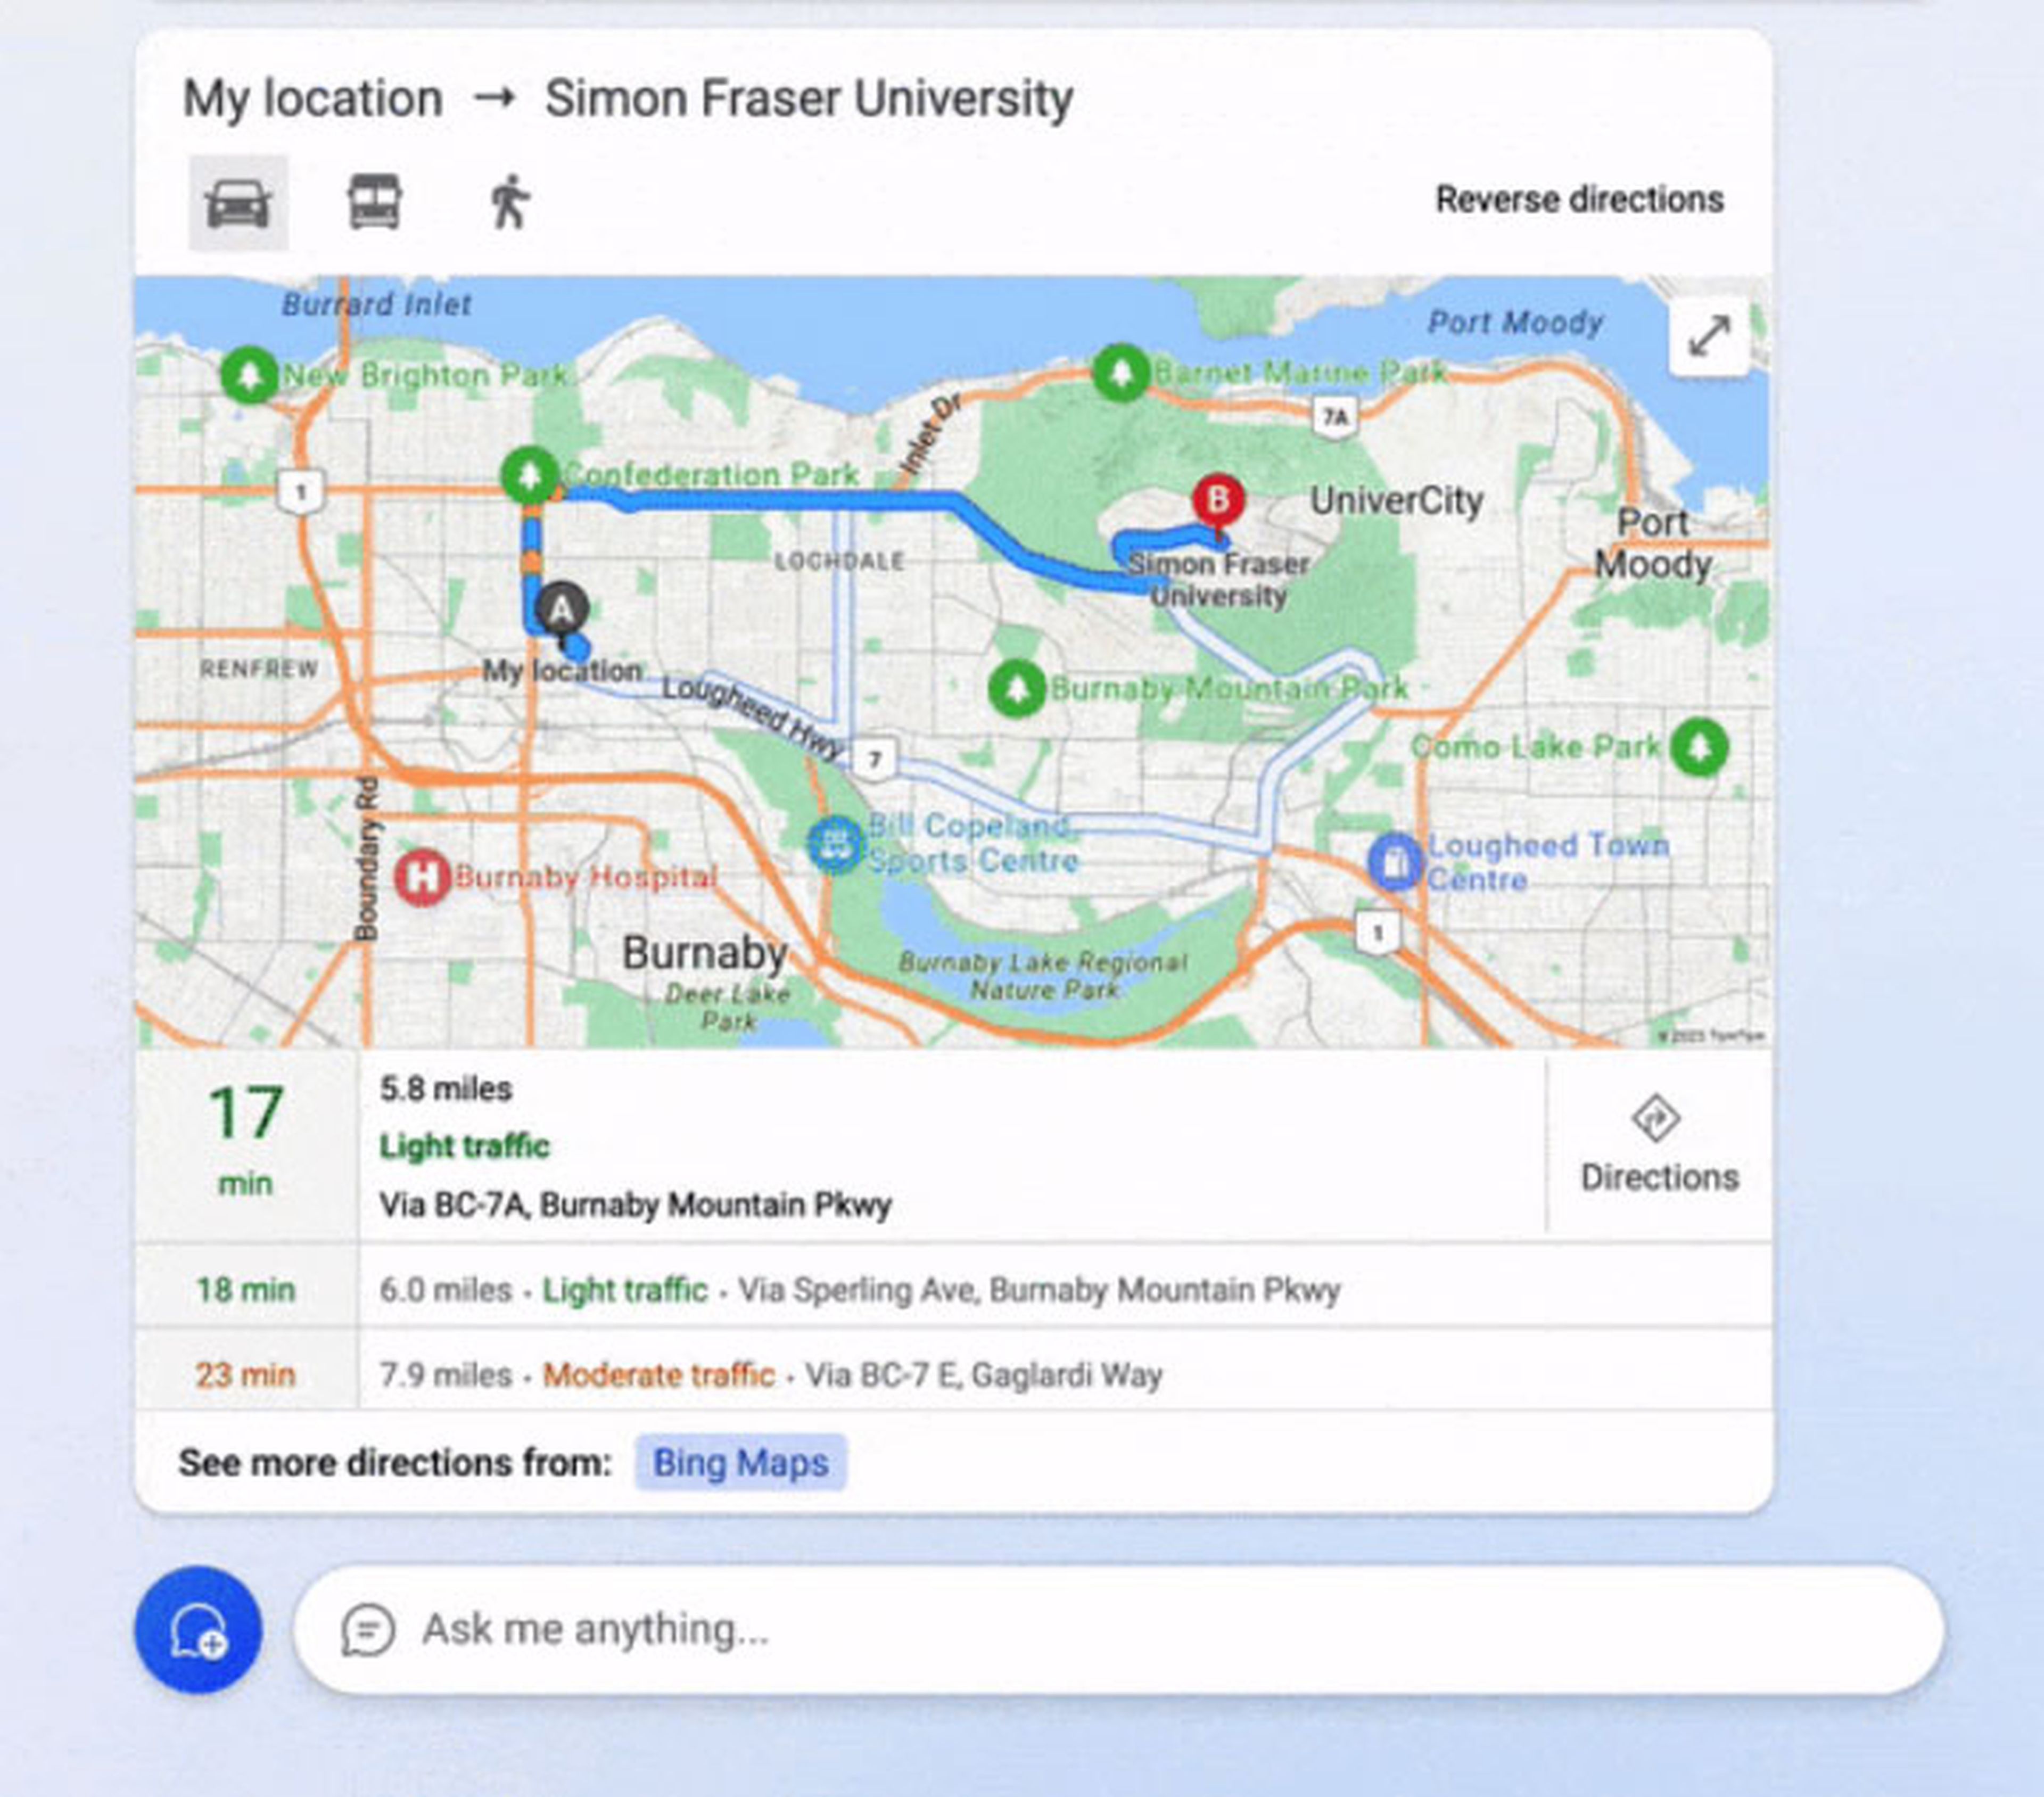 El chat inteligente de Bing estrena mejores respuestas para direcciones de mapas